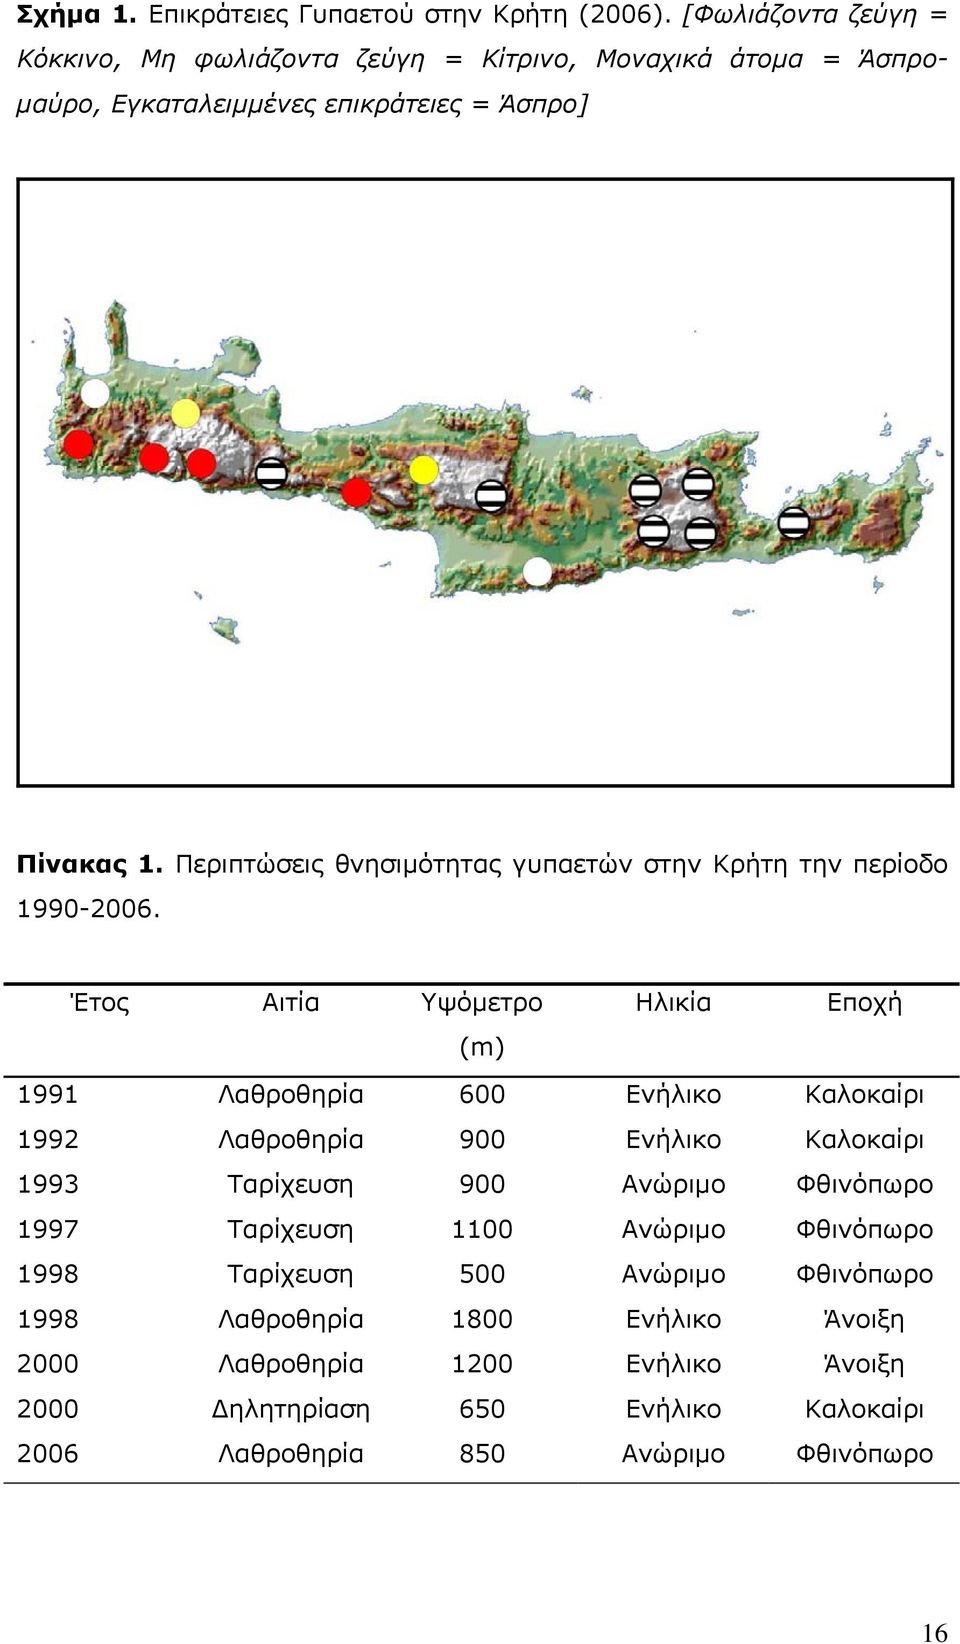 Περιπτώσεις θνησιµότητας γυπαετών στην Κρήτη την περίοδο 1990-2006.